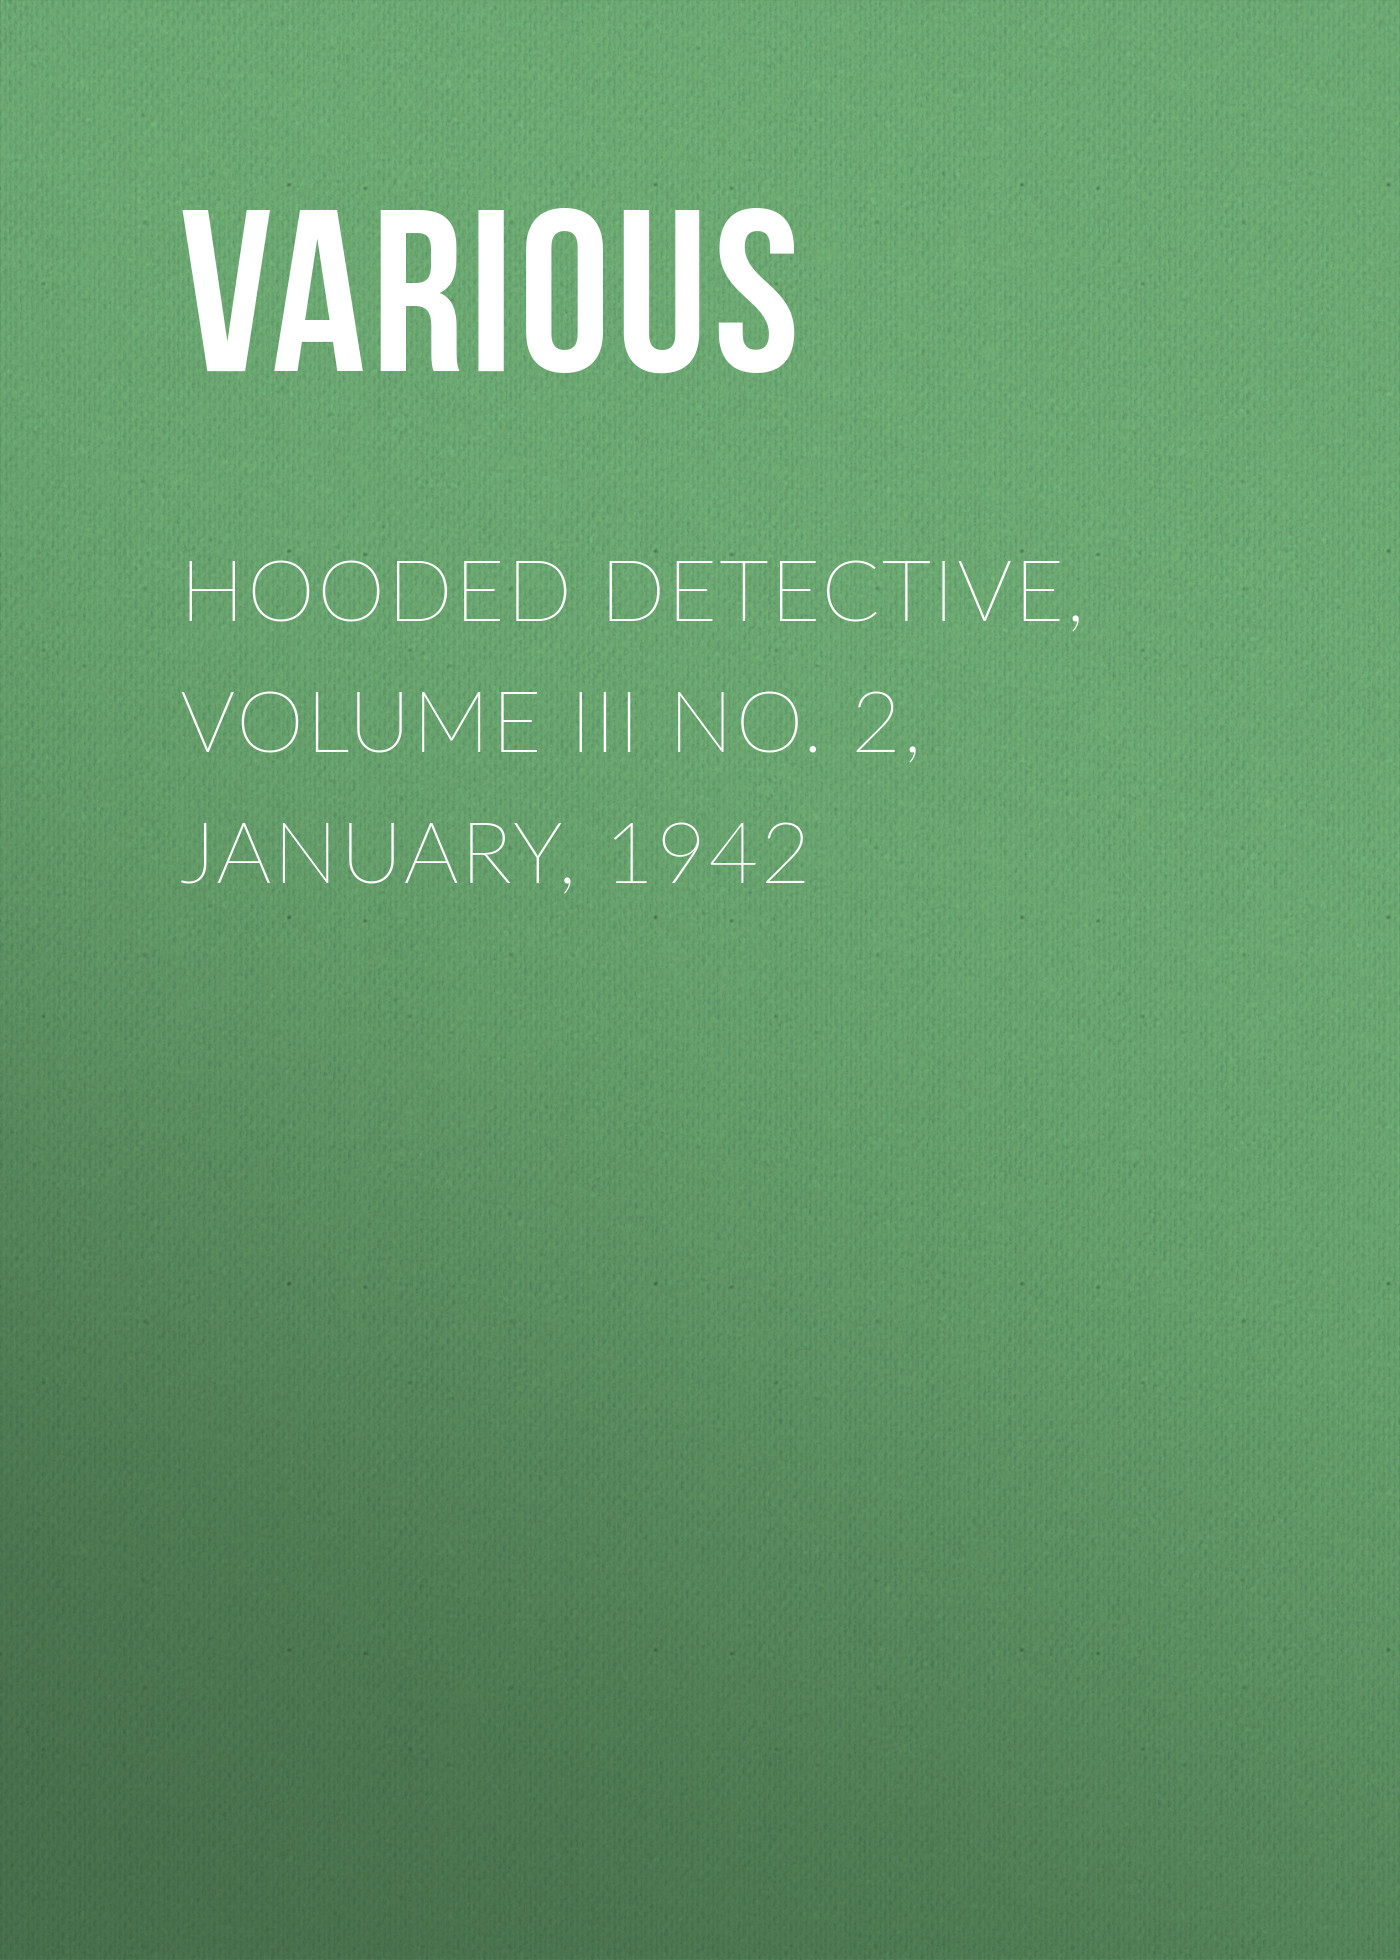 Журнал Hooded Detective, Volume III No. 2, January, 1942 из серии , созданный  Various, может относится к жанру Журналы, Зарубежные детективы. Стоимость электронного журнала Hooded Detective, Volume III No. 2, January, 1942 с идентификатором 25717117 составляет 0 руб.